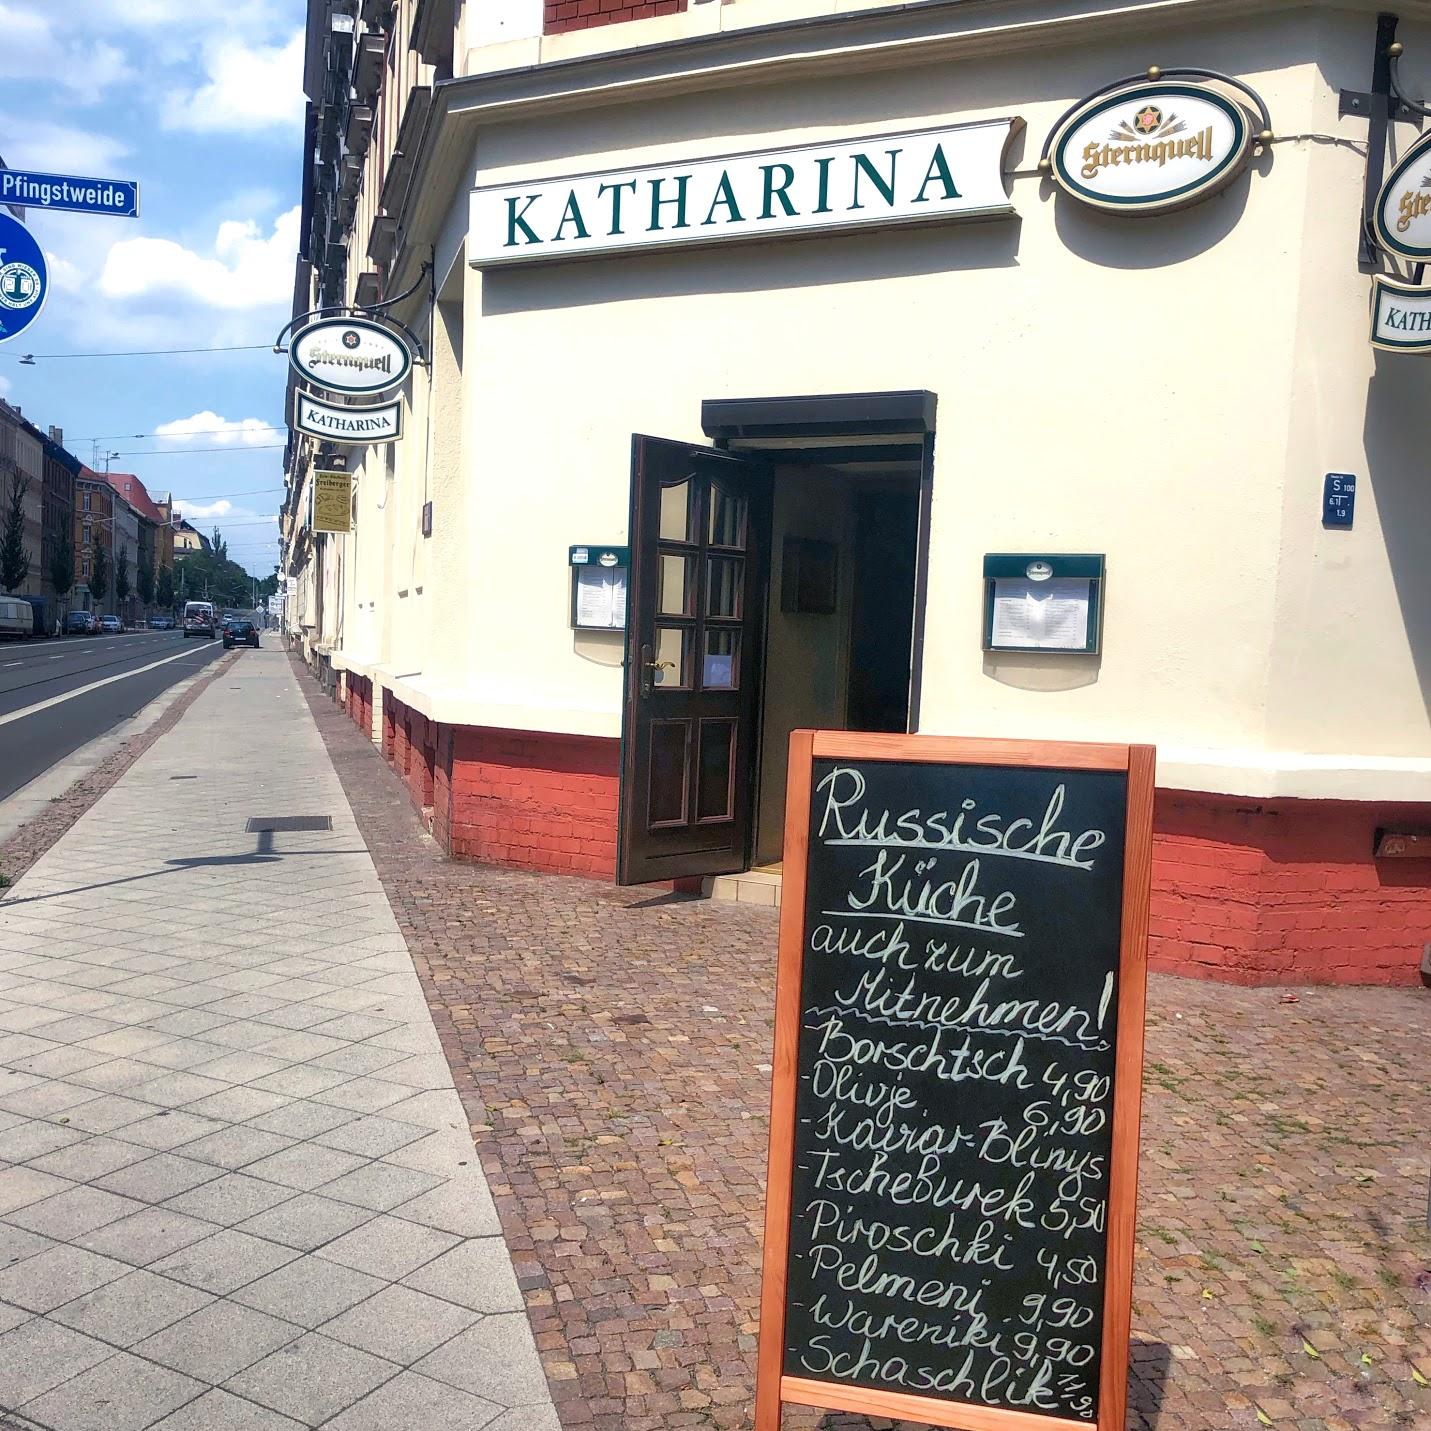 Restaurant "Russisches Restaurant Katharina" in Leipzig